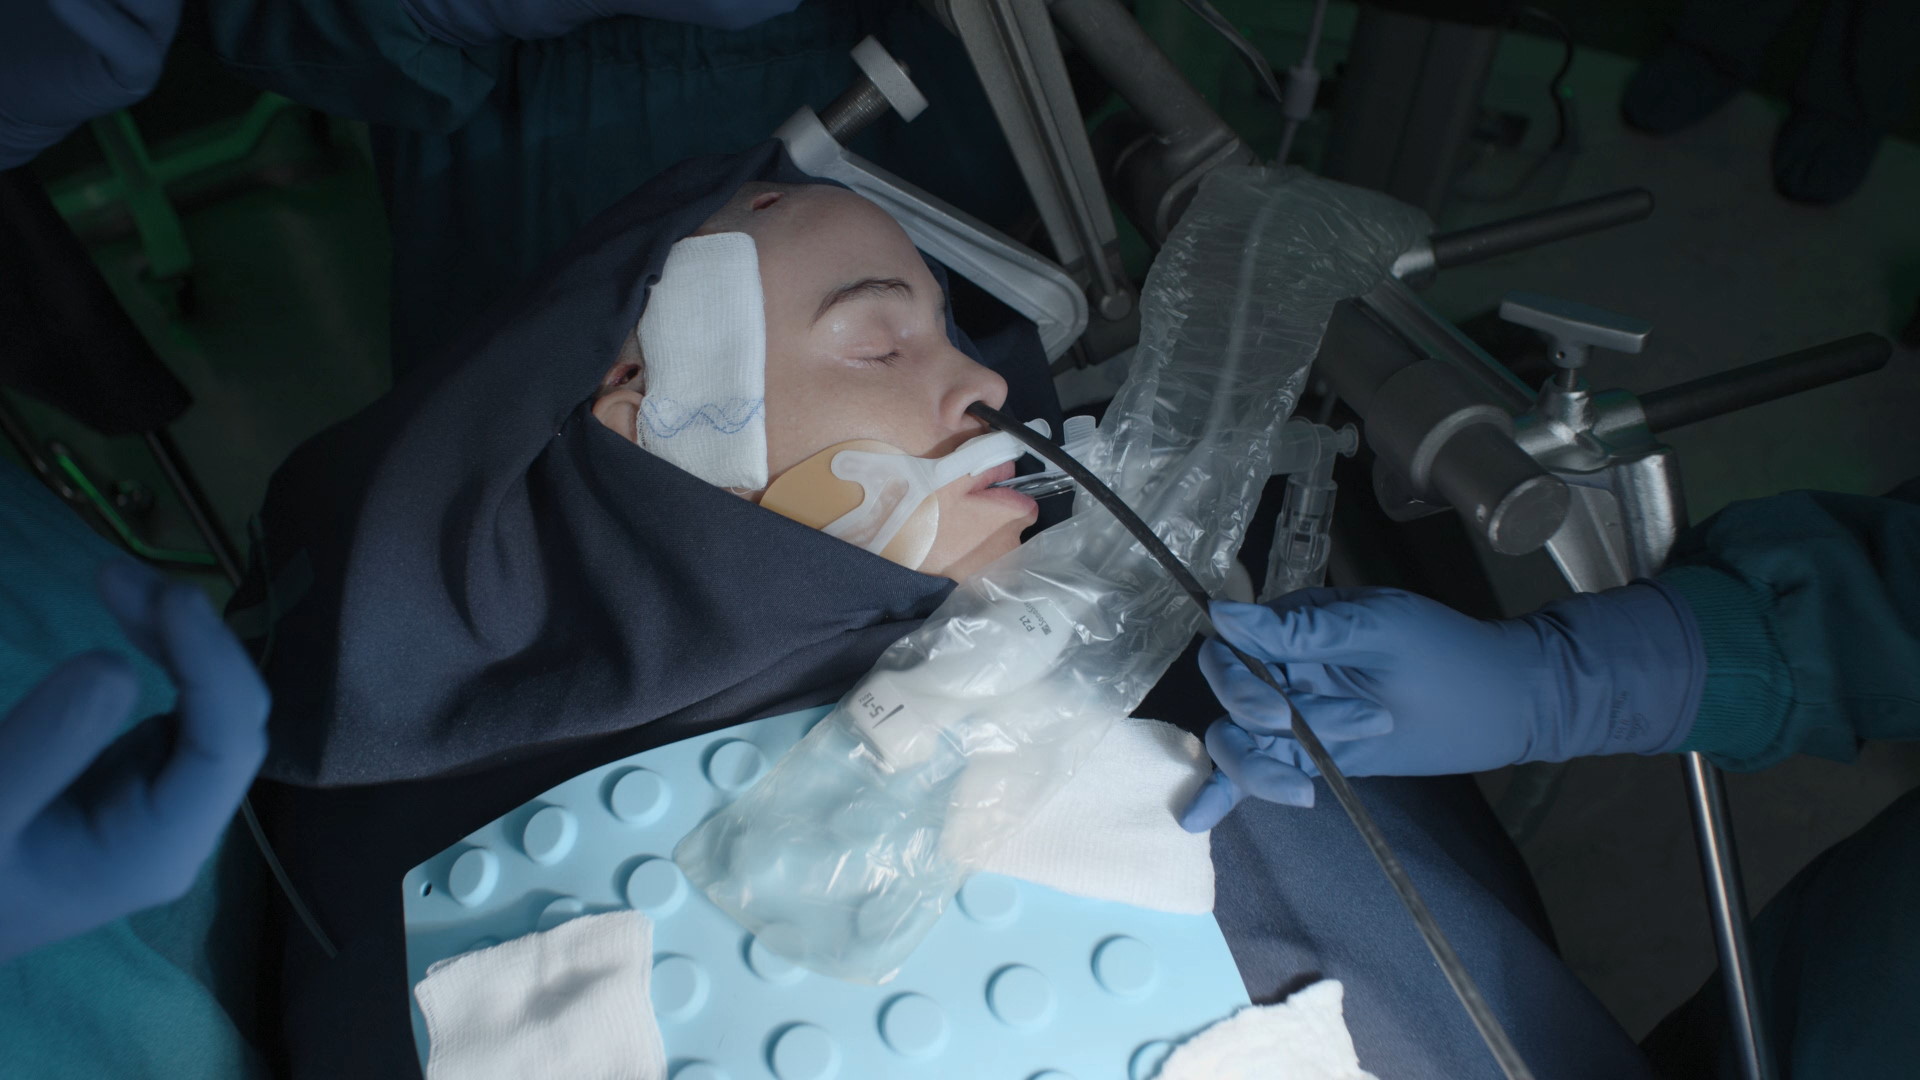 Хороший доктор 6 сезон 20 серия: Детальный обзор, ключевые события и анализ персонажей